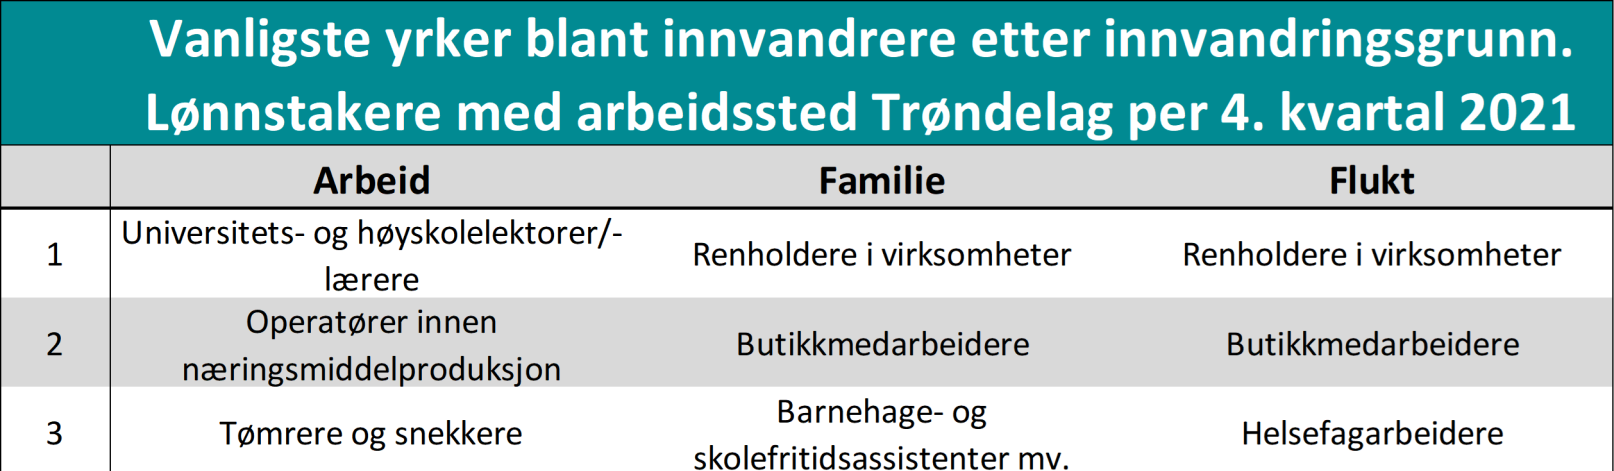 Vanligste yrker blant innvandrere etter innvandringsgrunn. Lønnstakere med arbeidssted Trøndelag per 4. kvartal 2021